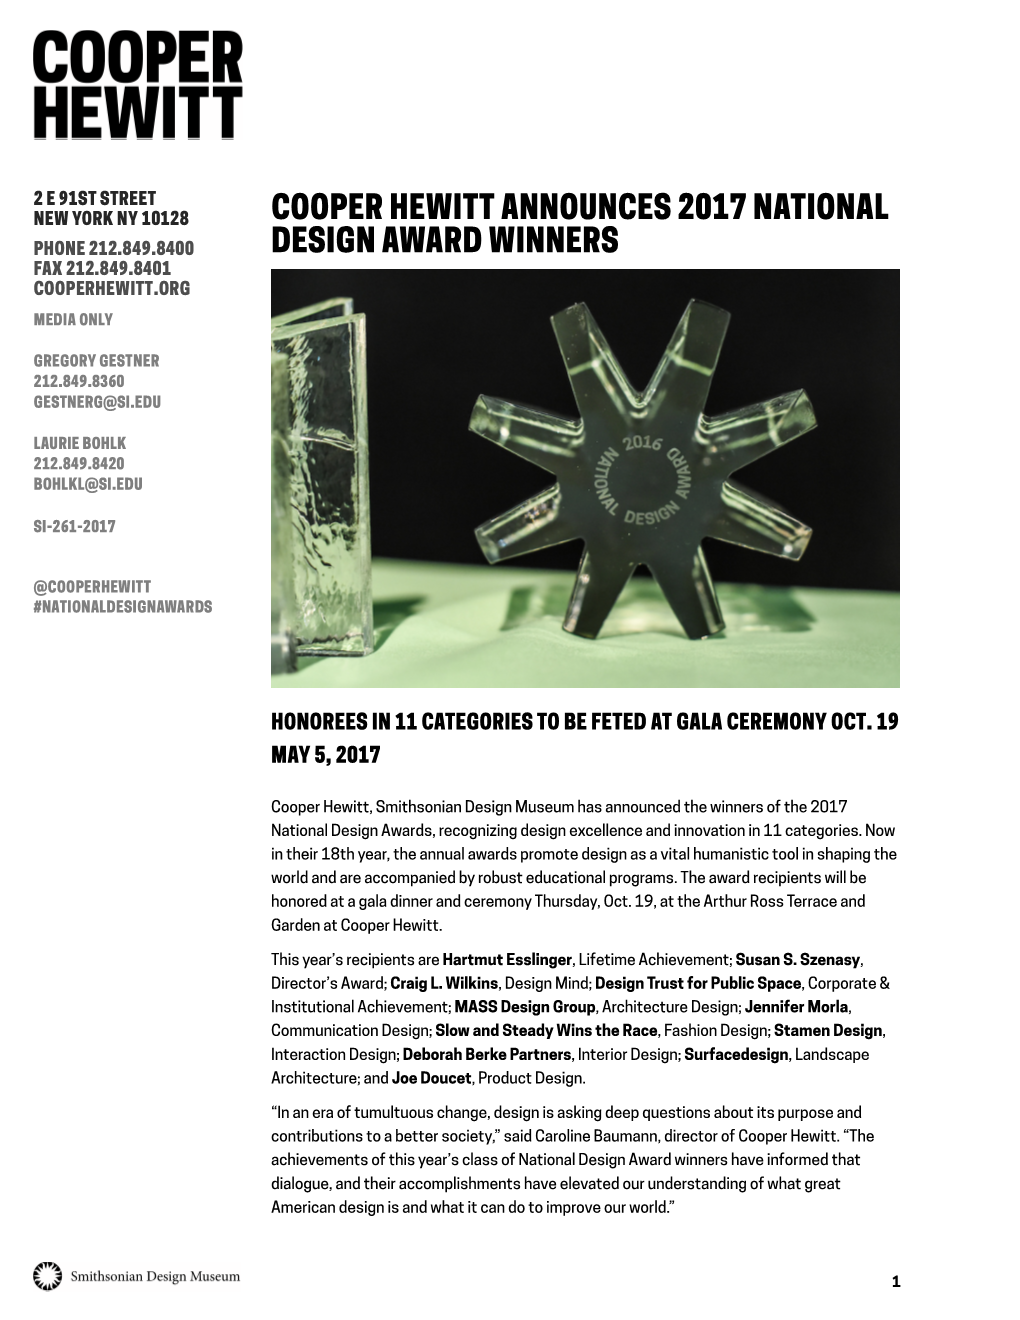 Cooper Hewitt Announces 2017 National Design Award